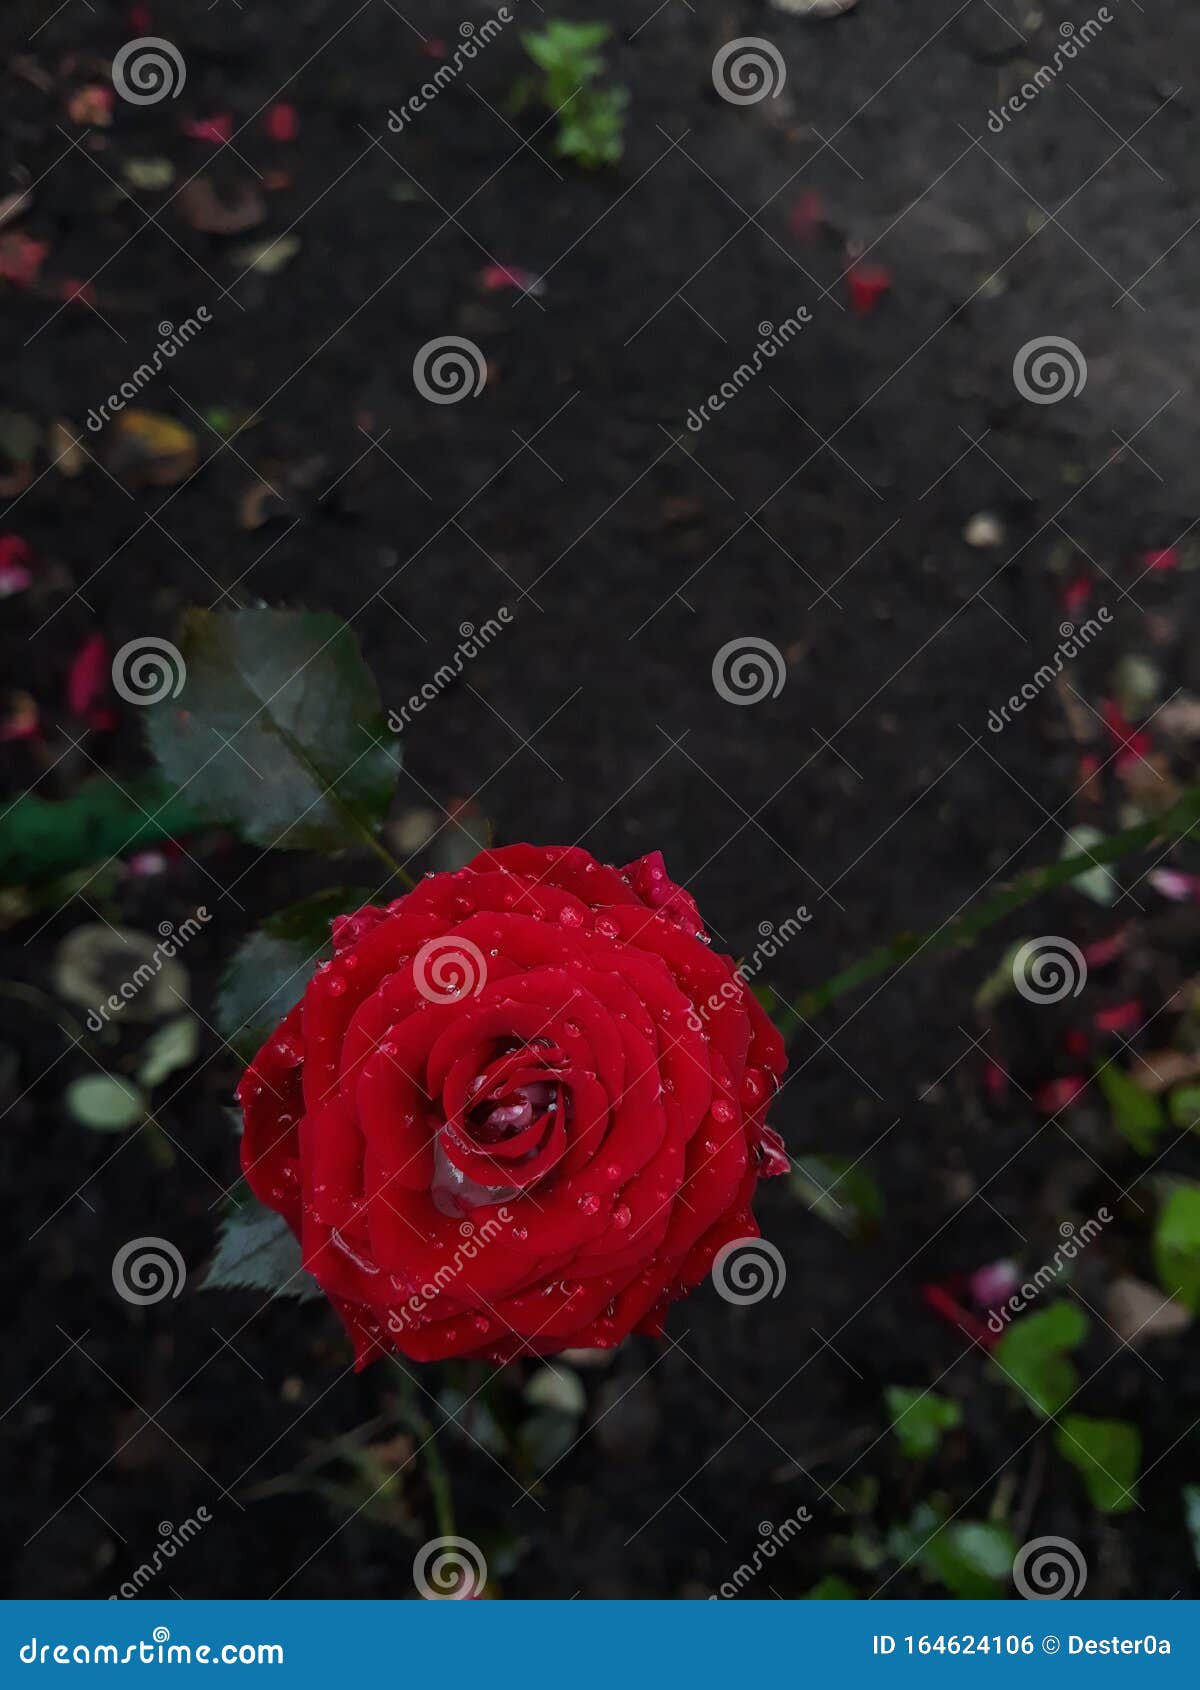 哭泣的玫瑰 库存图片. 图片 包括有 上升了, 感觉, 玫瑰, 红色, 本质, 庭院, 泪花, 啼声 - 248739